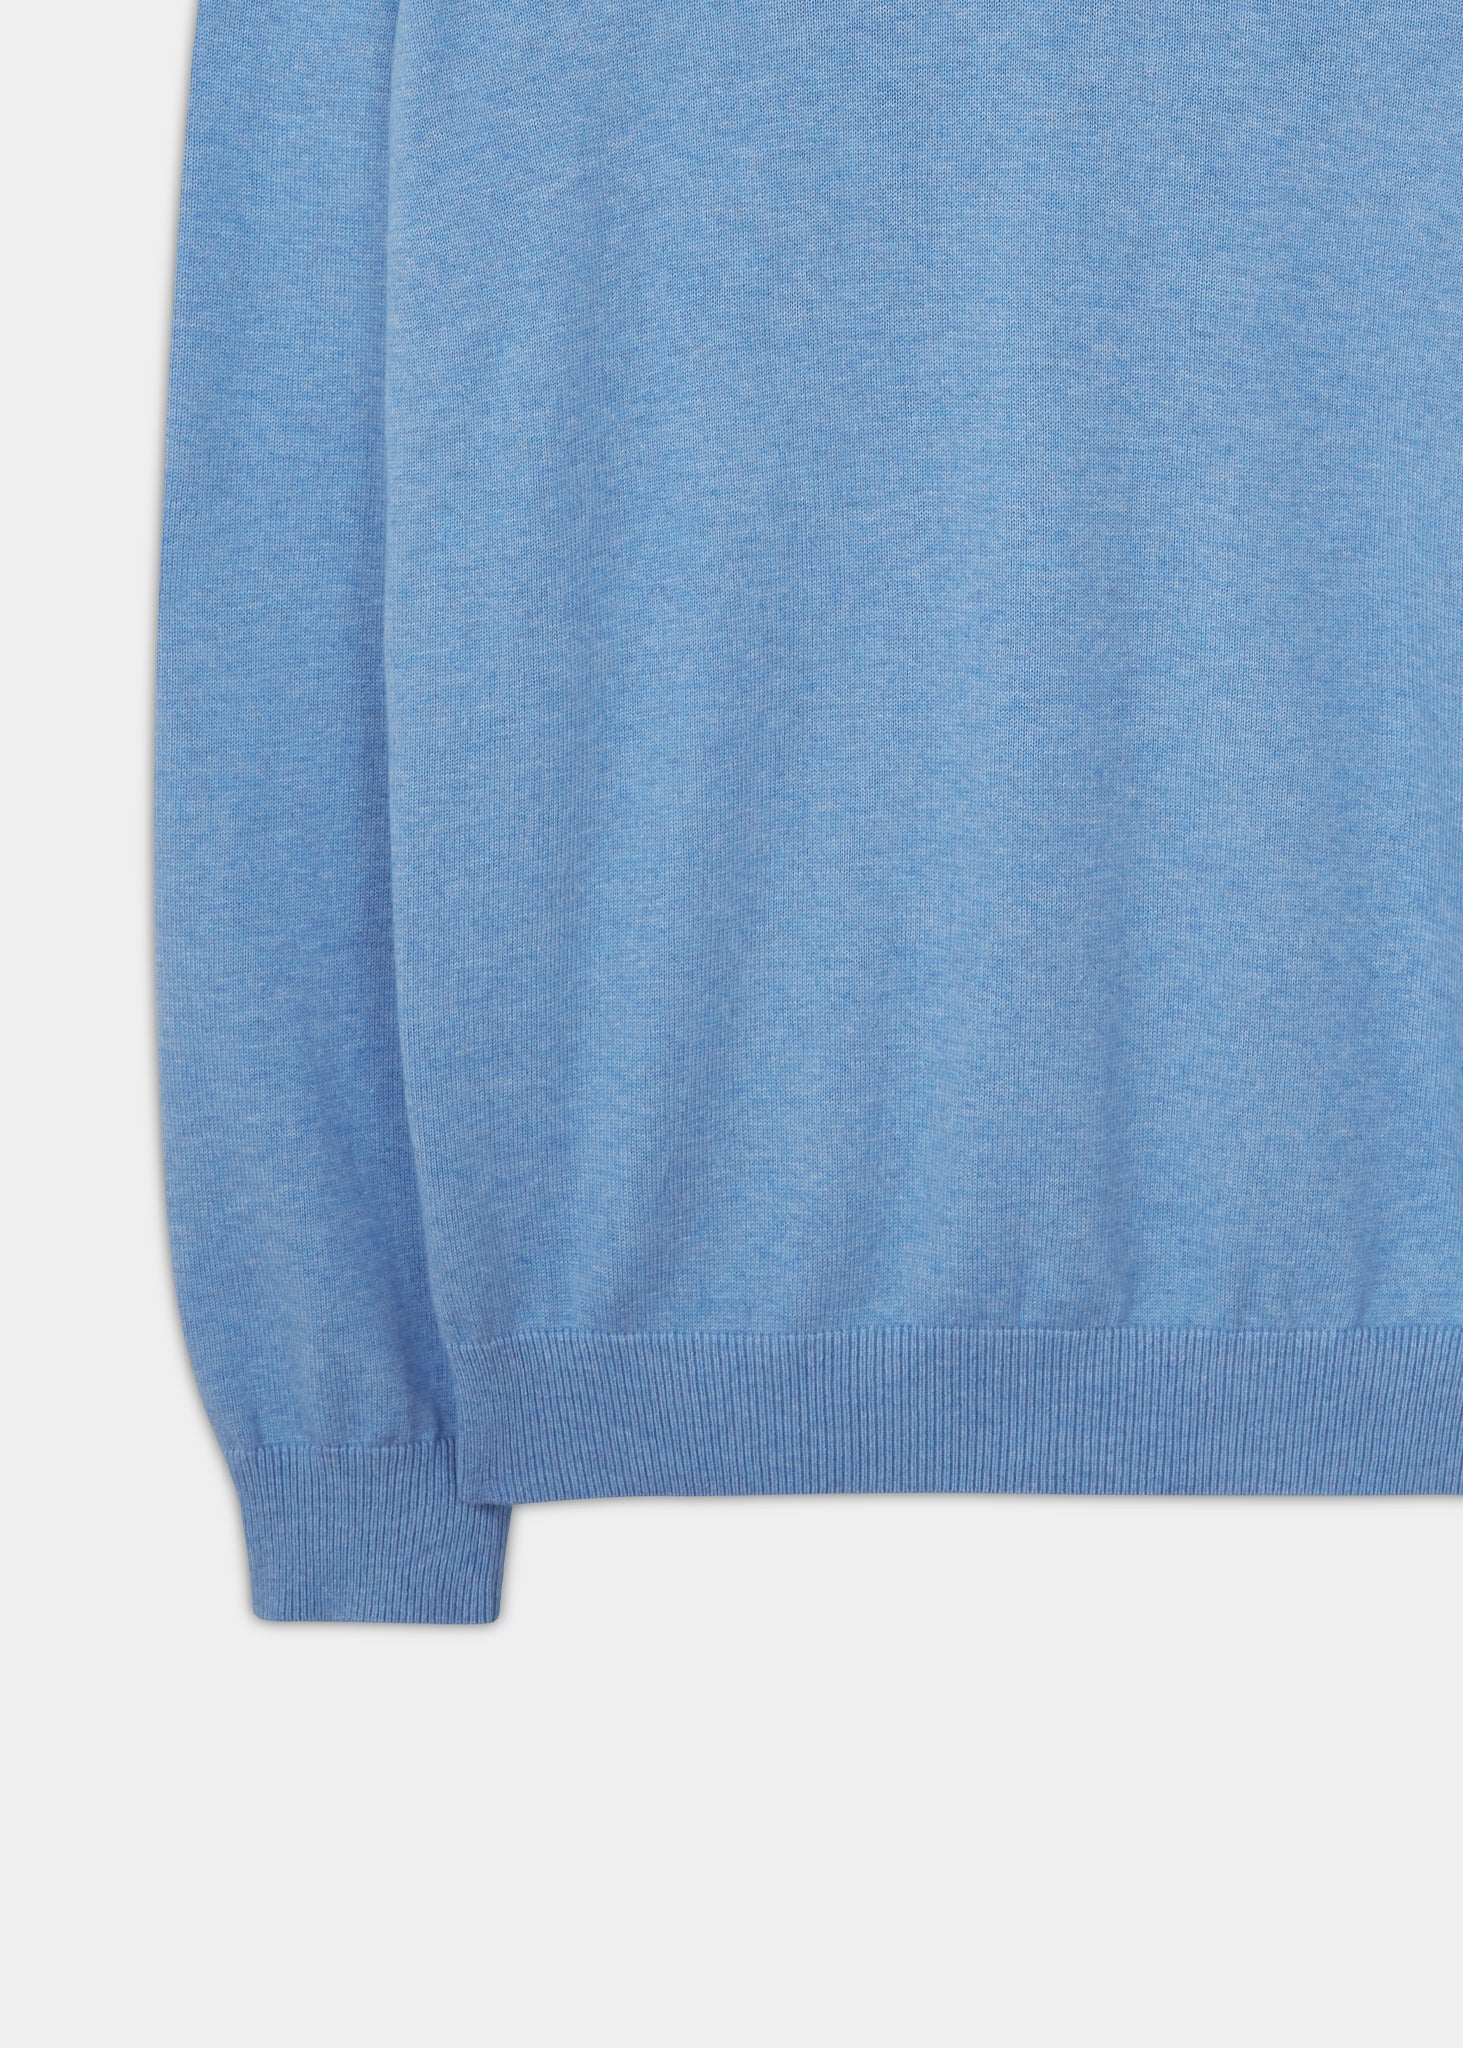 Alan Paine cotton cashmere v-neck jumper in carolina blue